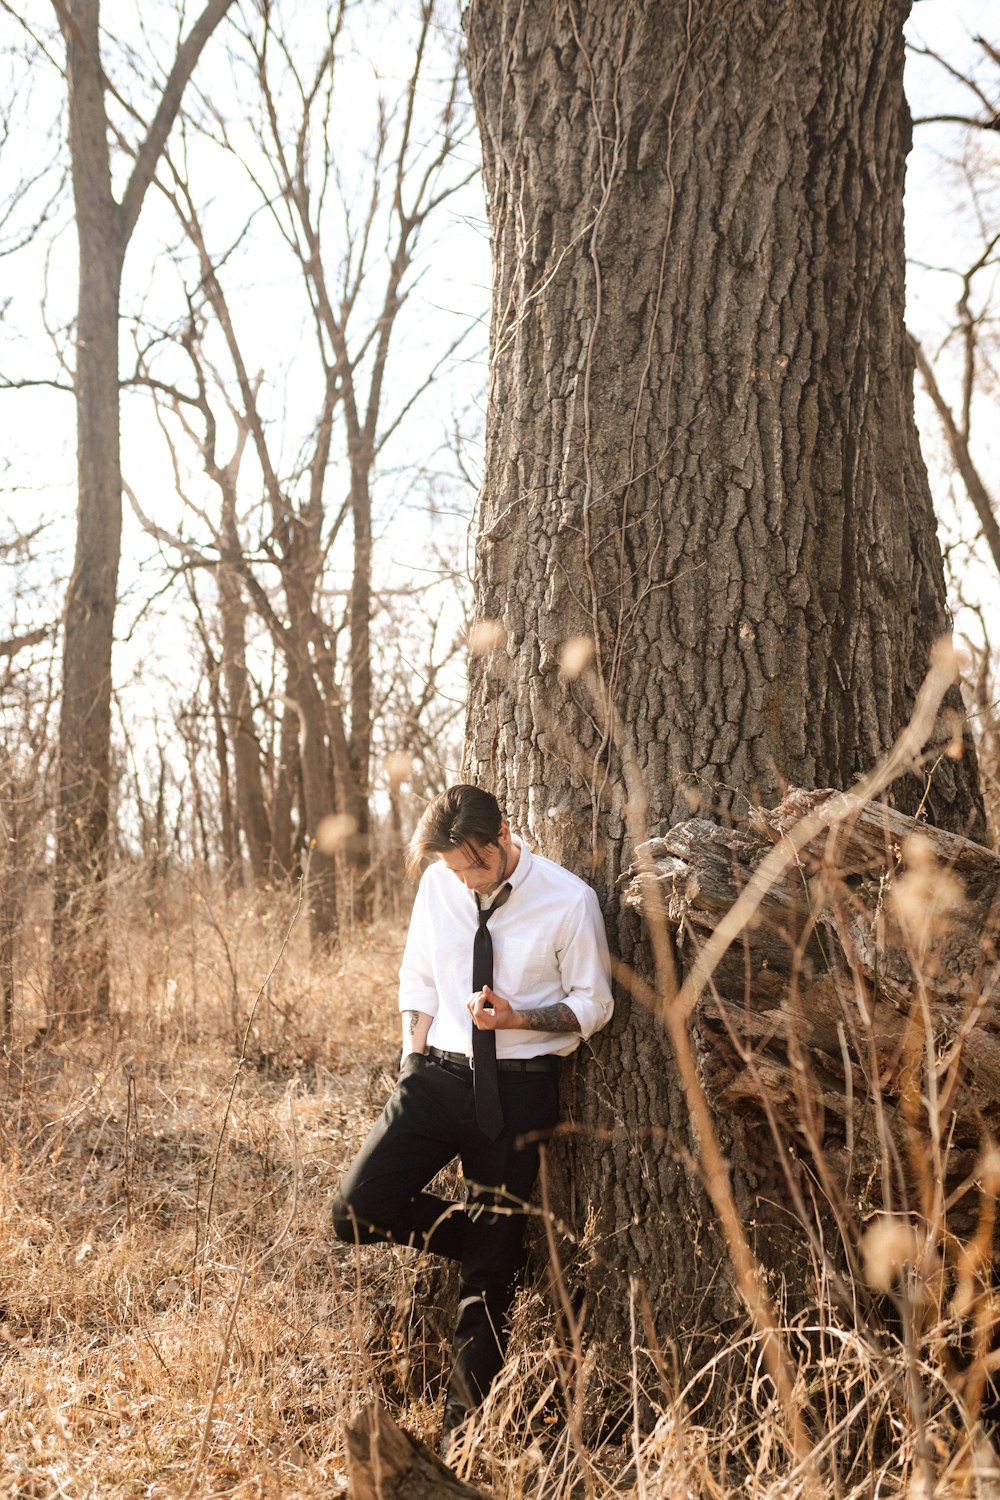 Un homme en cravate appuyé contre un arbre photo – Photo Des moines  Gratuite sur Unsplash